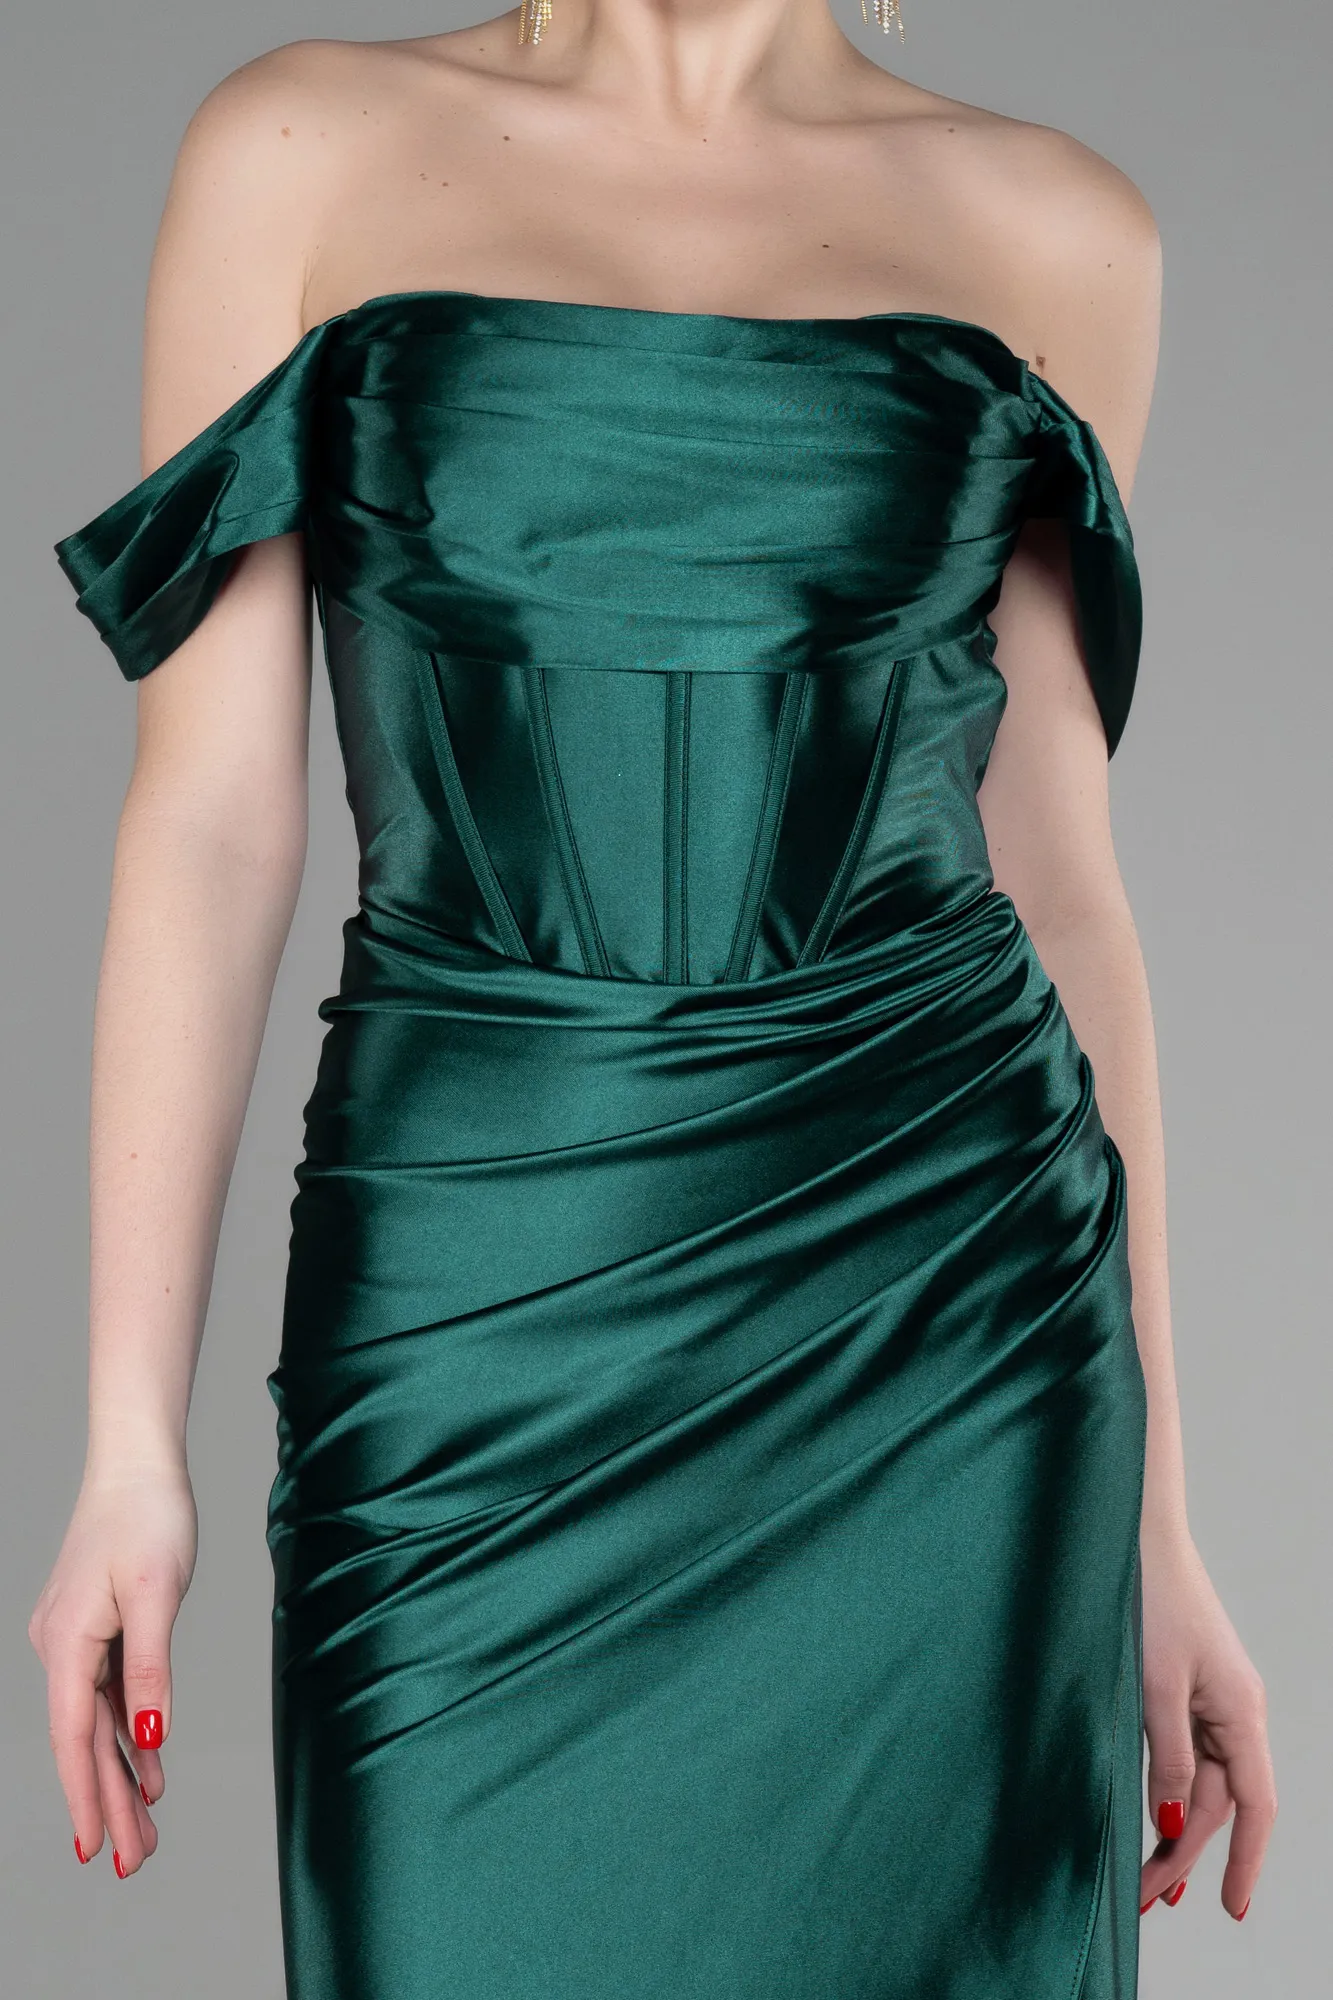 Emerald Green-Long Evening Dress ABU3611